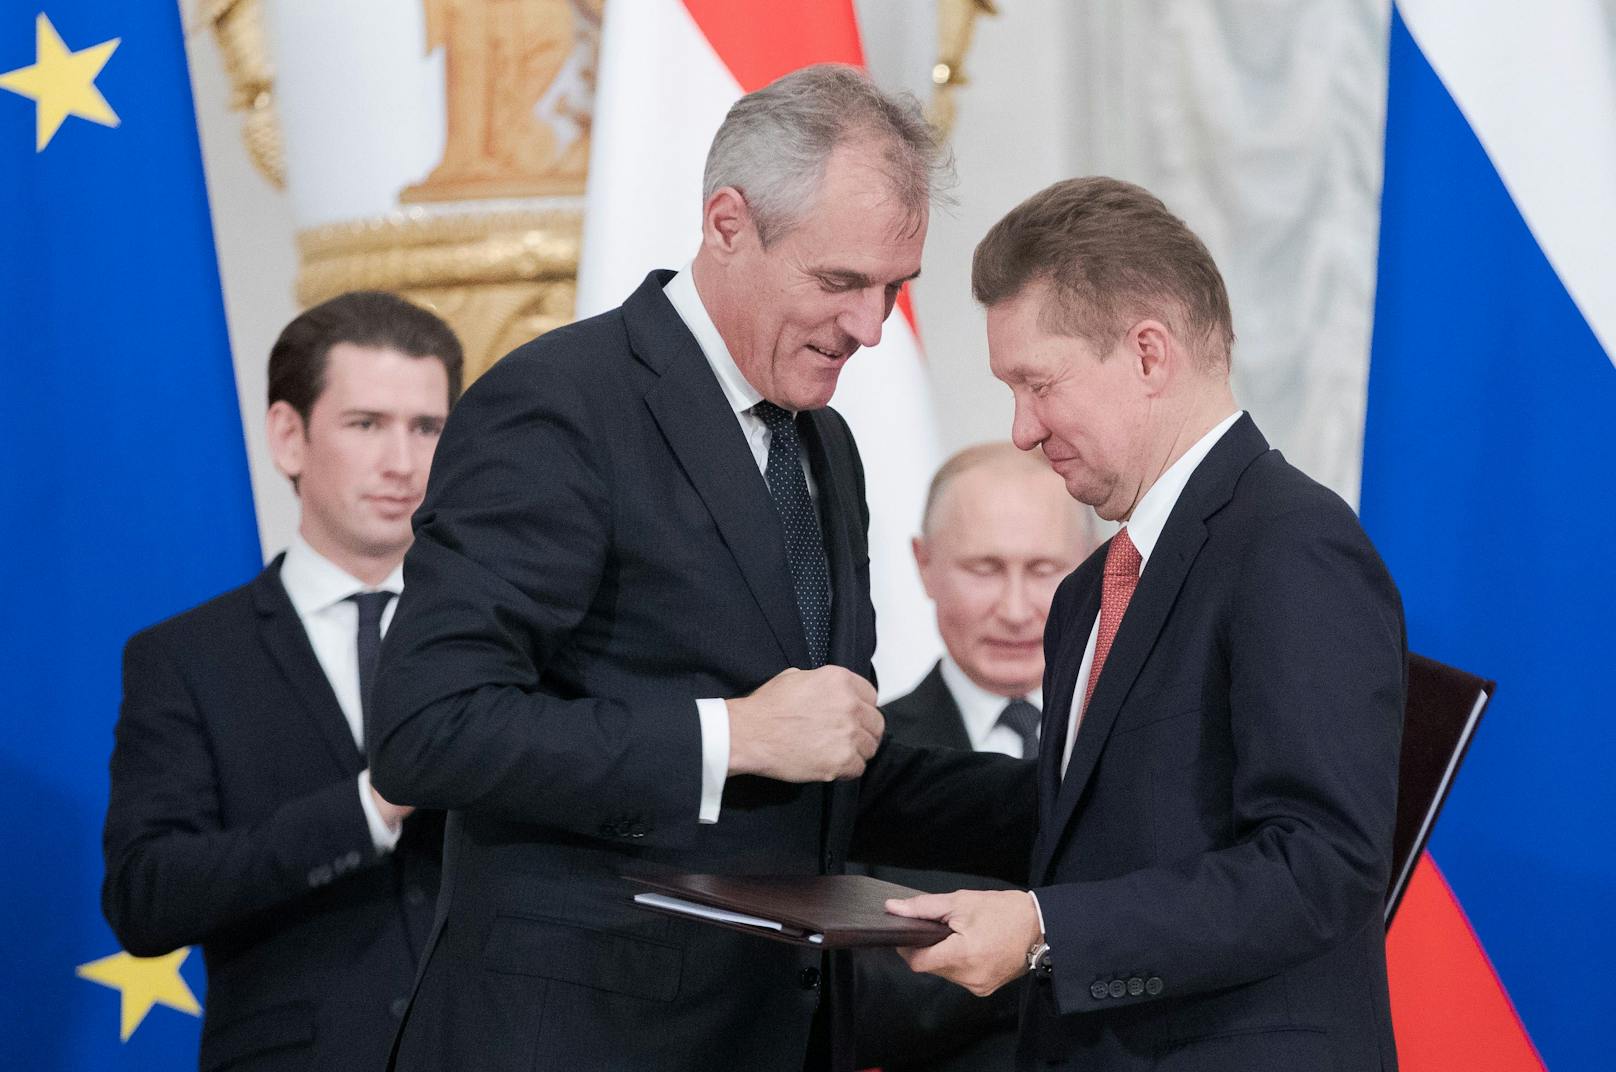 2018 hat die OMV gemeinsam mit der russischen Gazprom den Liefervertrag bis 2040 verlängert. Im Hintergrund: Ex-Kanzler Kurz und Russen-Despot Wladimir Putin.